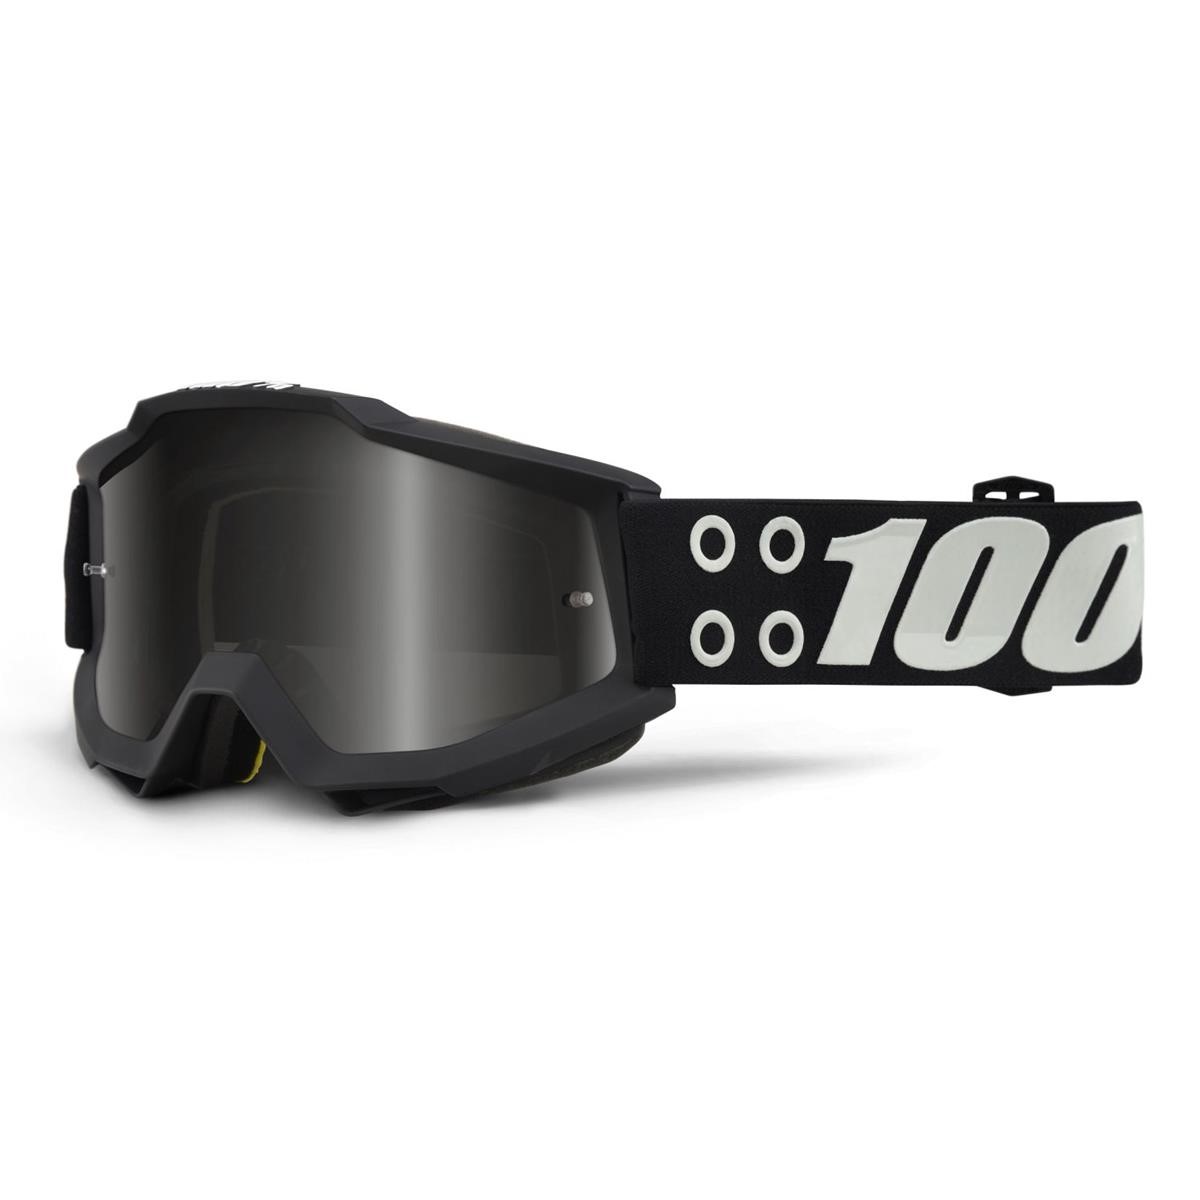 100% Goggle The Accuri Defcon 1 - Mirror Silver Anti-Fog